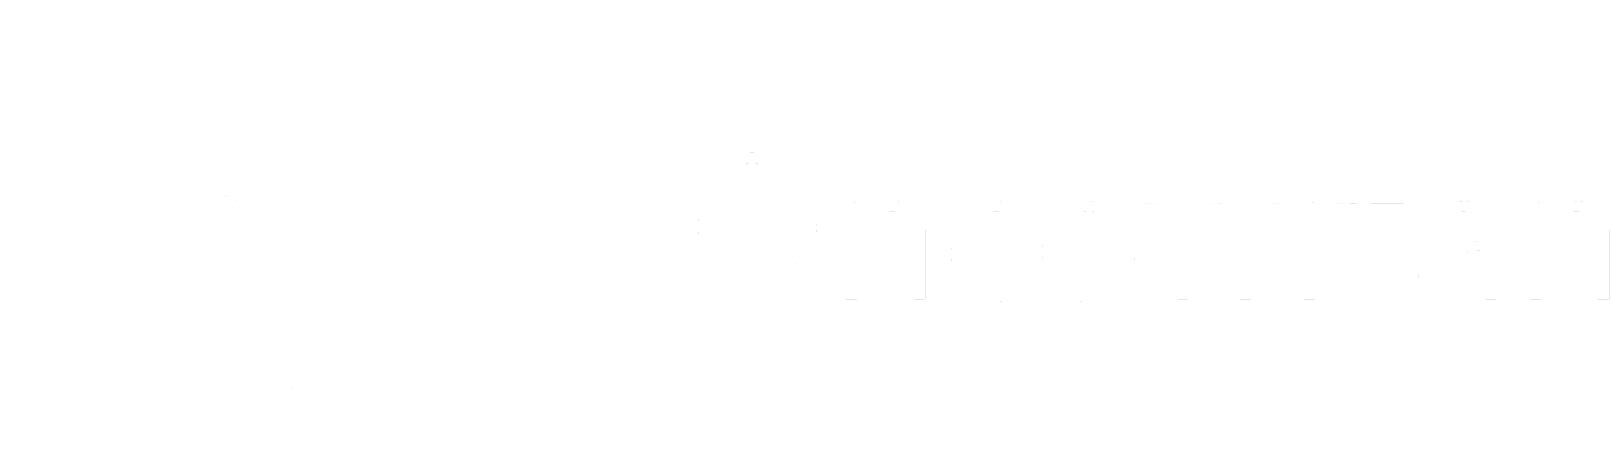 Oncowitan logo (white)